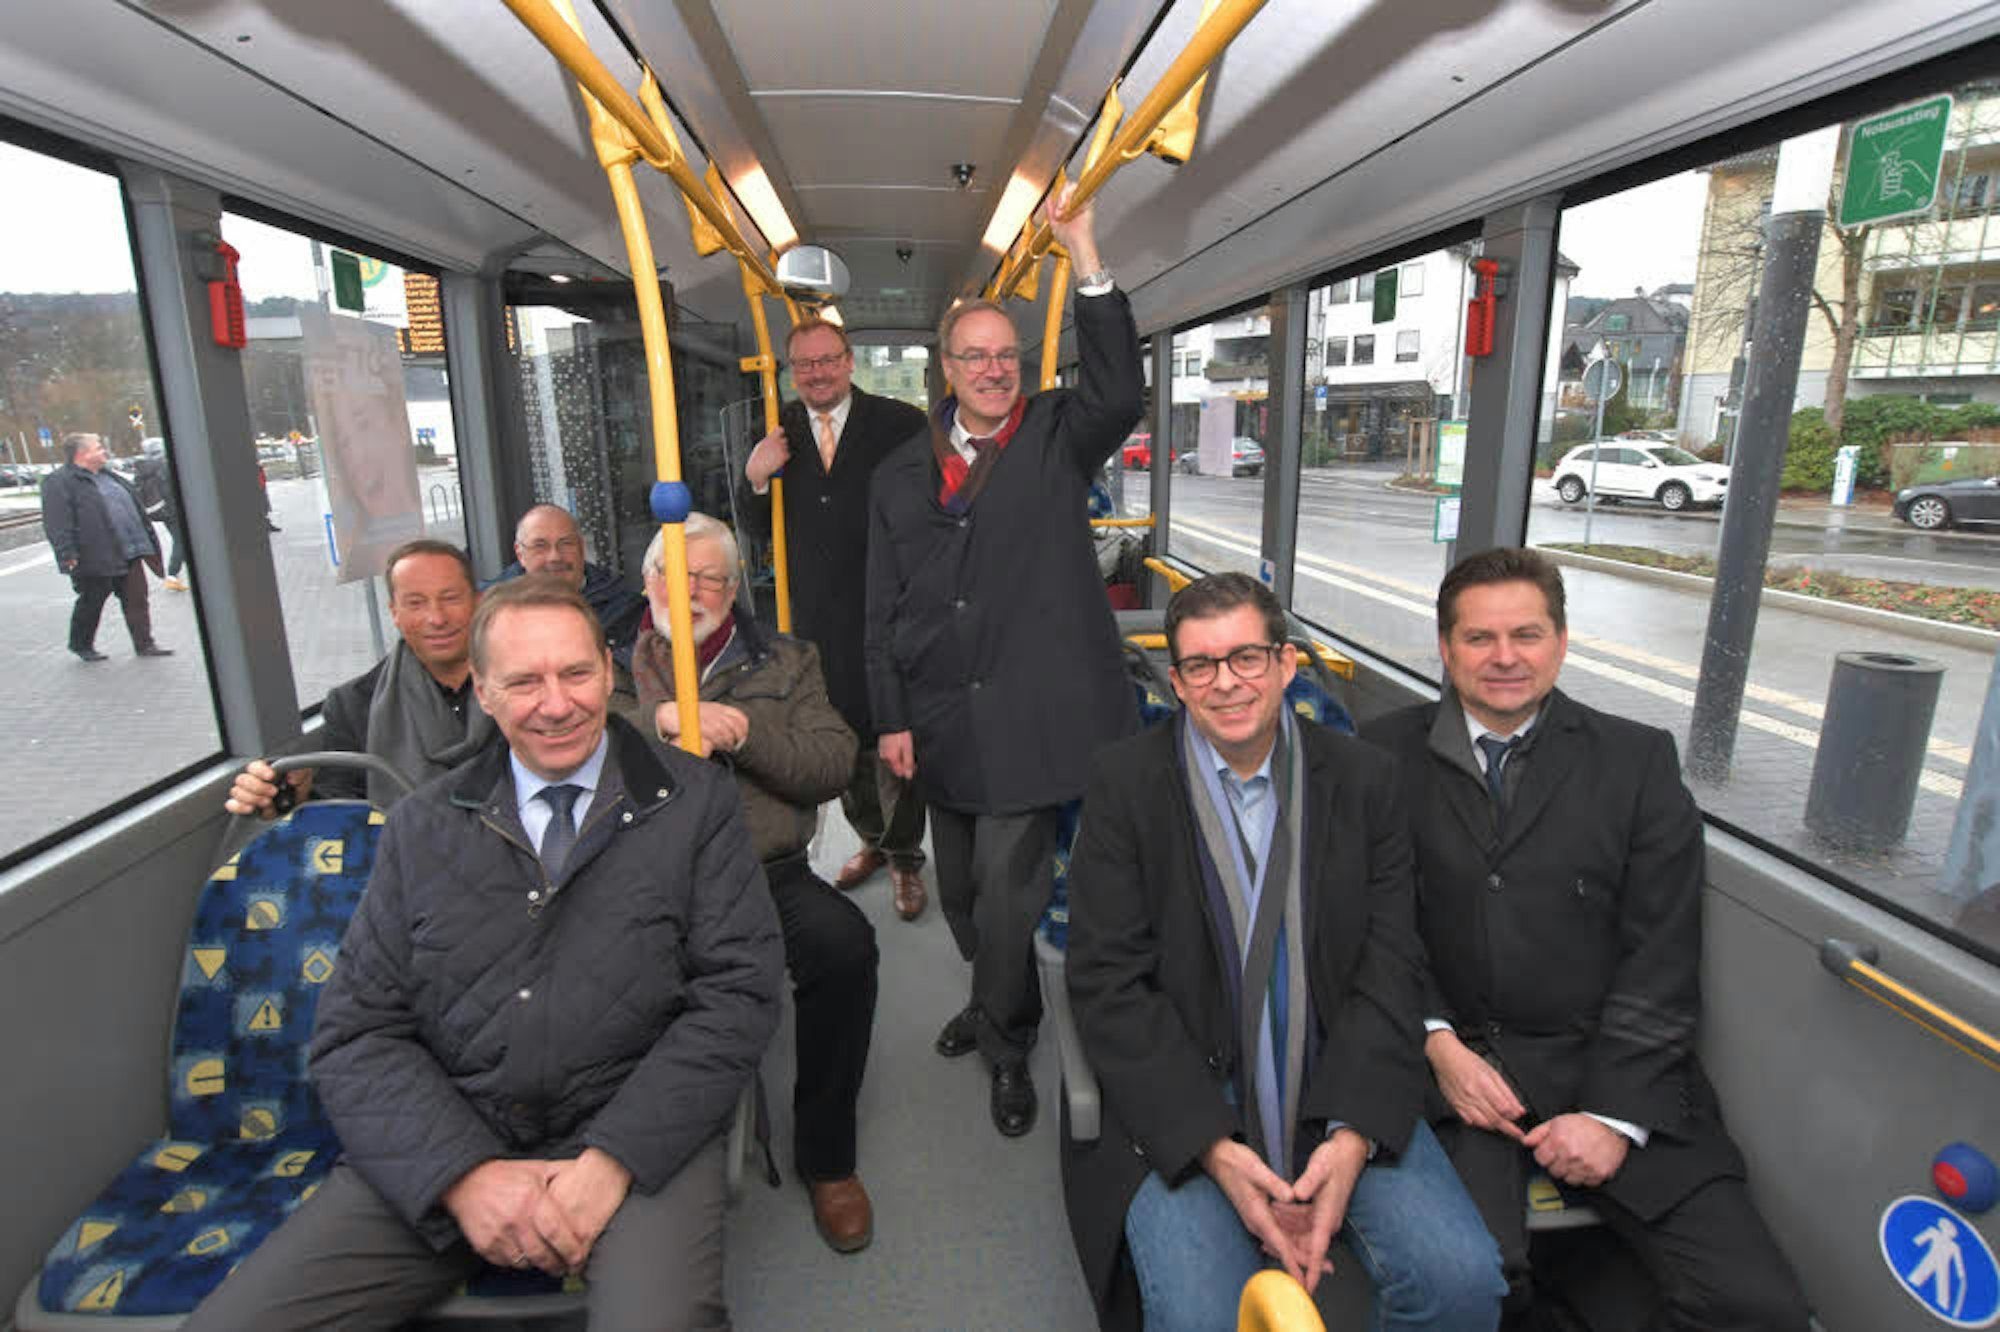 Landrat Jochen Hagt (vorn, v.l.) freut sich mit den Bürgermeistern Frank Helmenstein und Ulrich Stücker über die neue Buslinie.